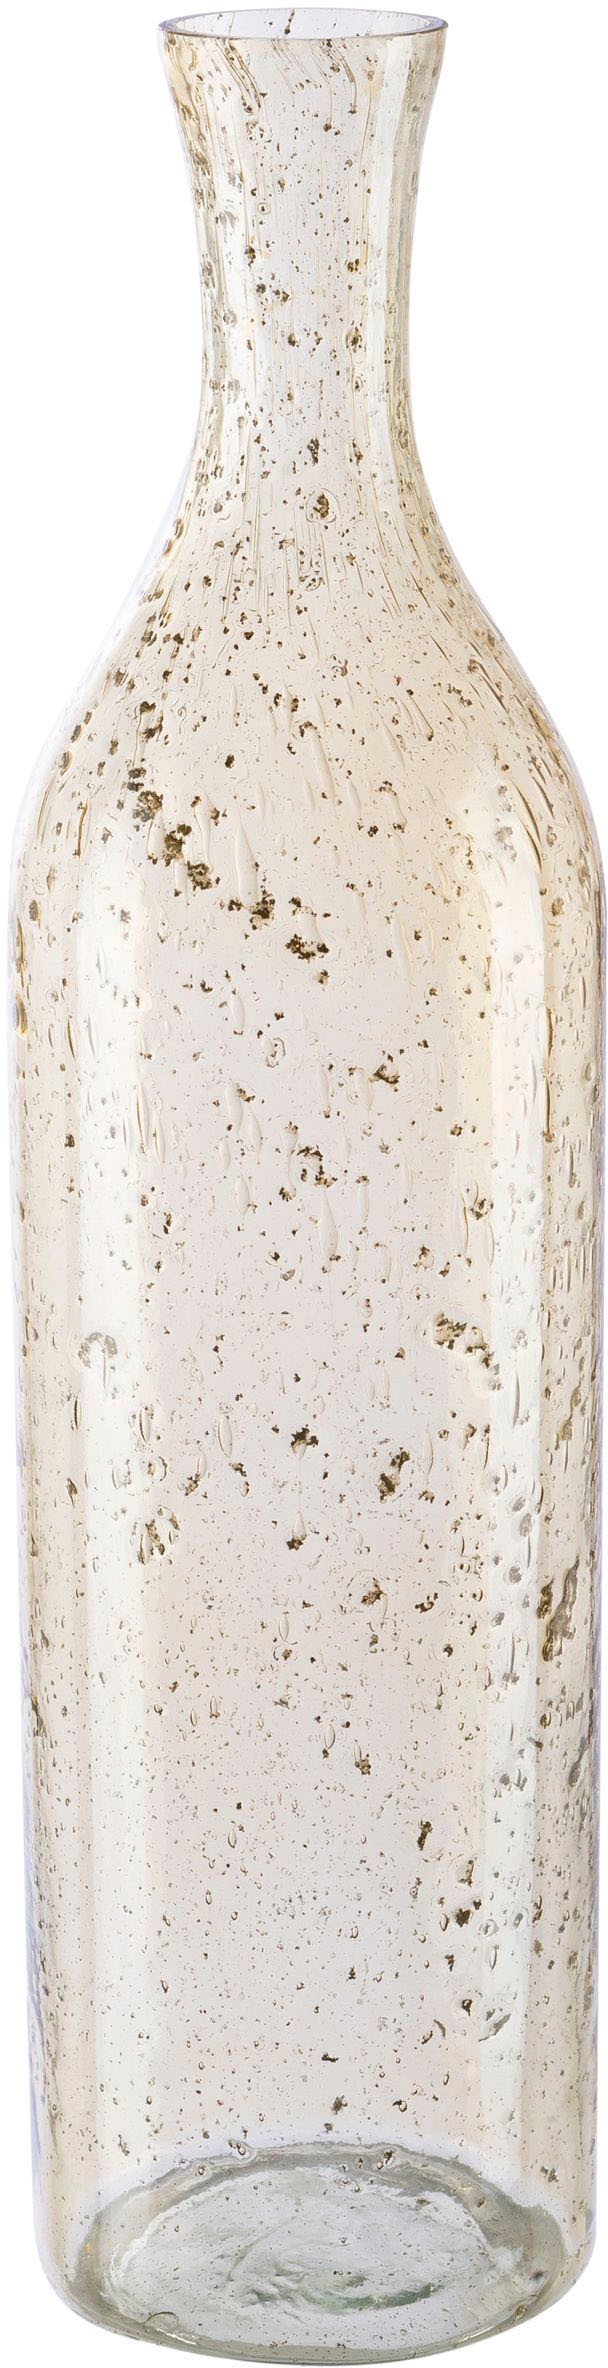 Creativ home Tischvase »Dekovase Marble Finish«, (1 St.), in Flaschenform, mit Farbakzenten